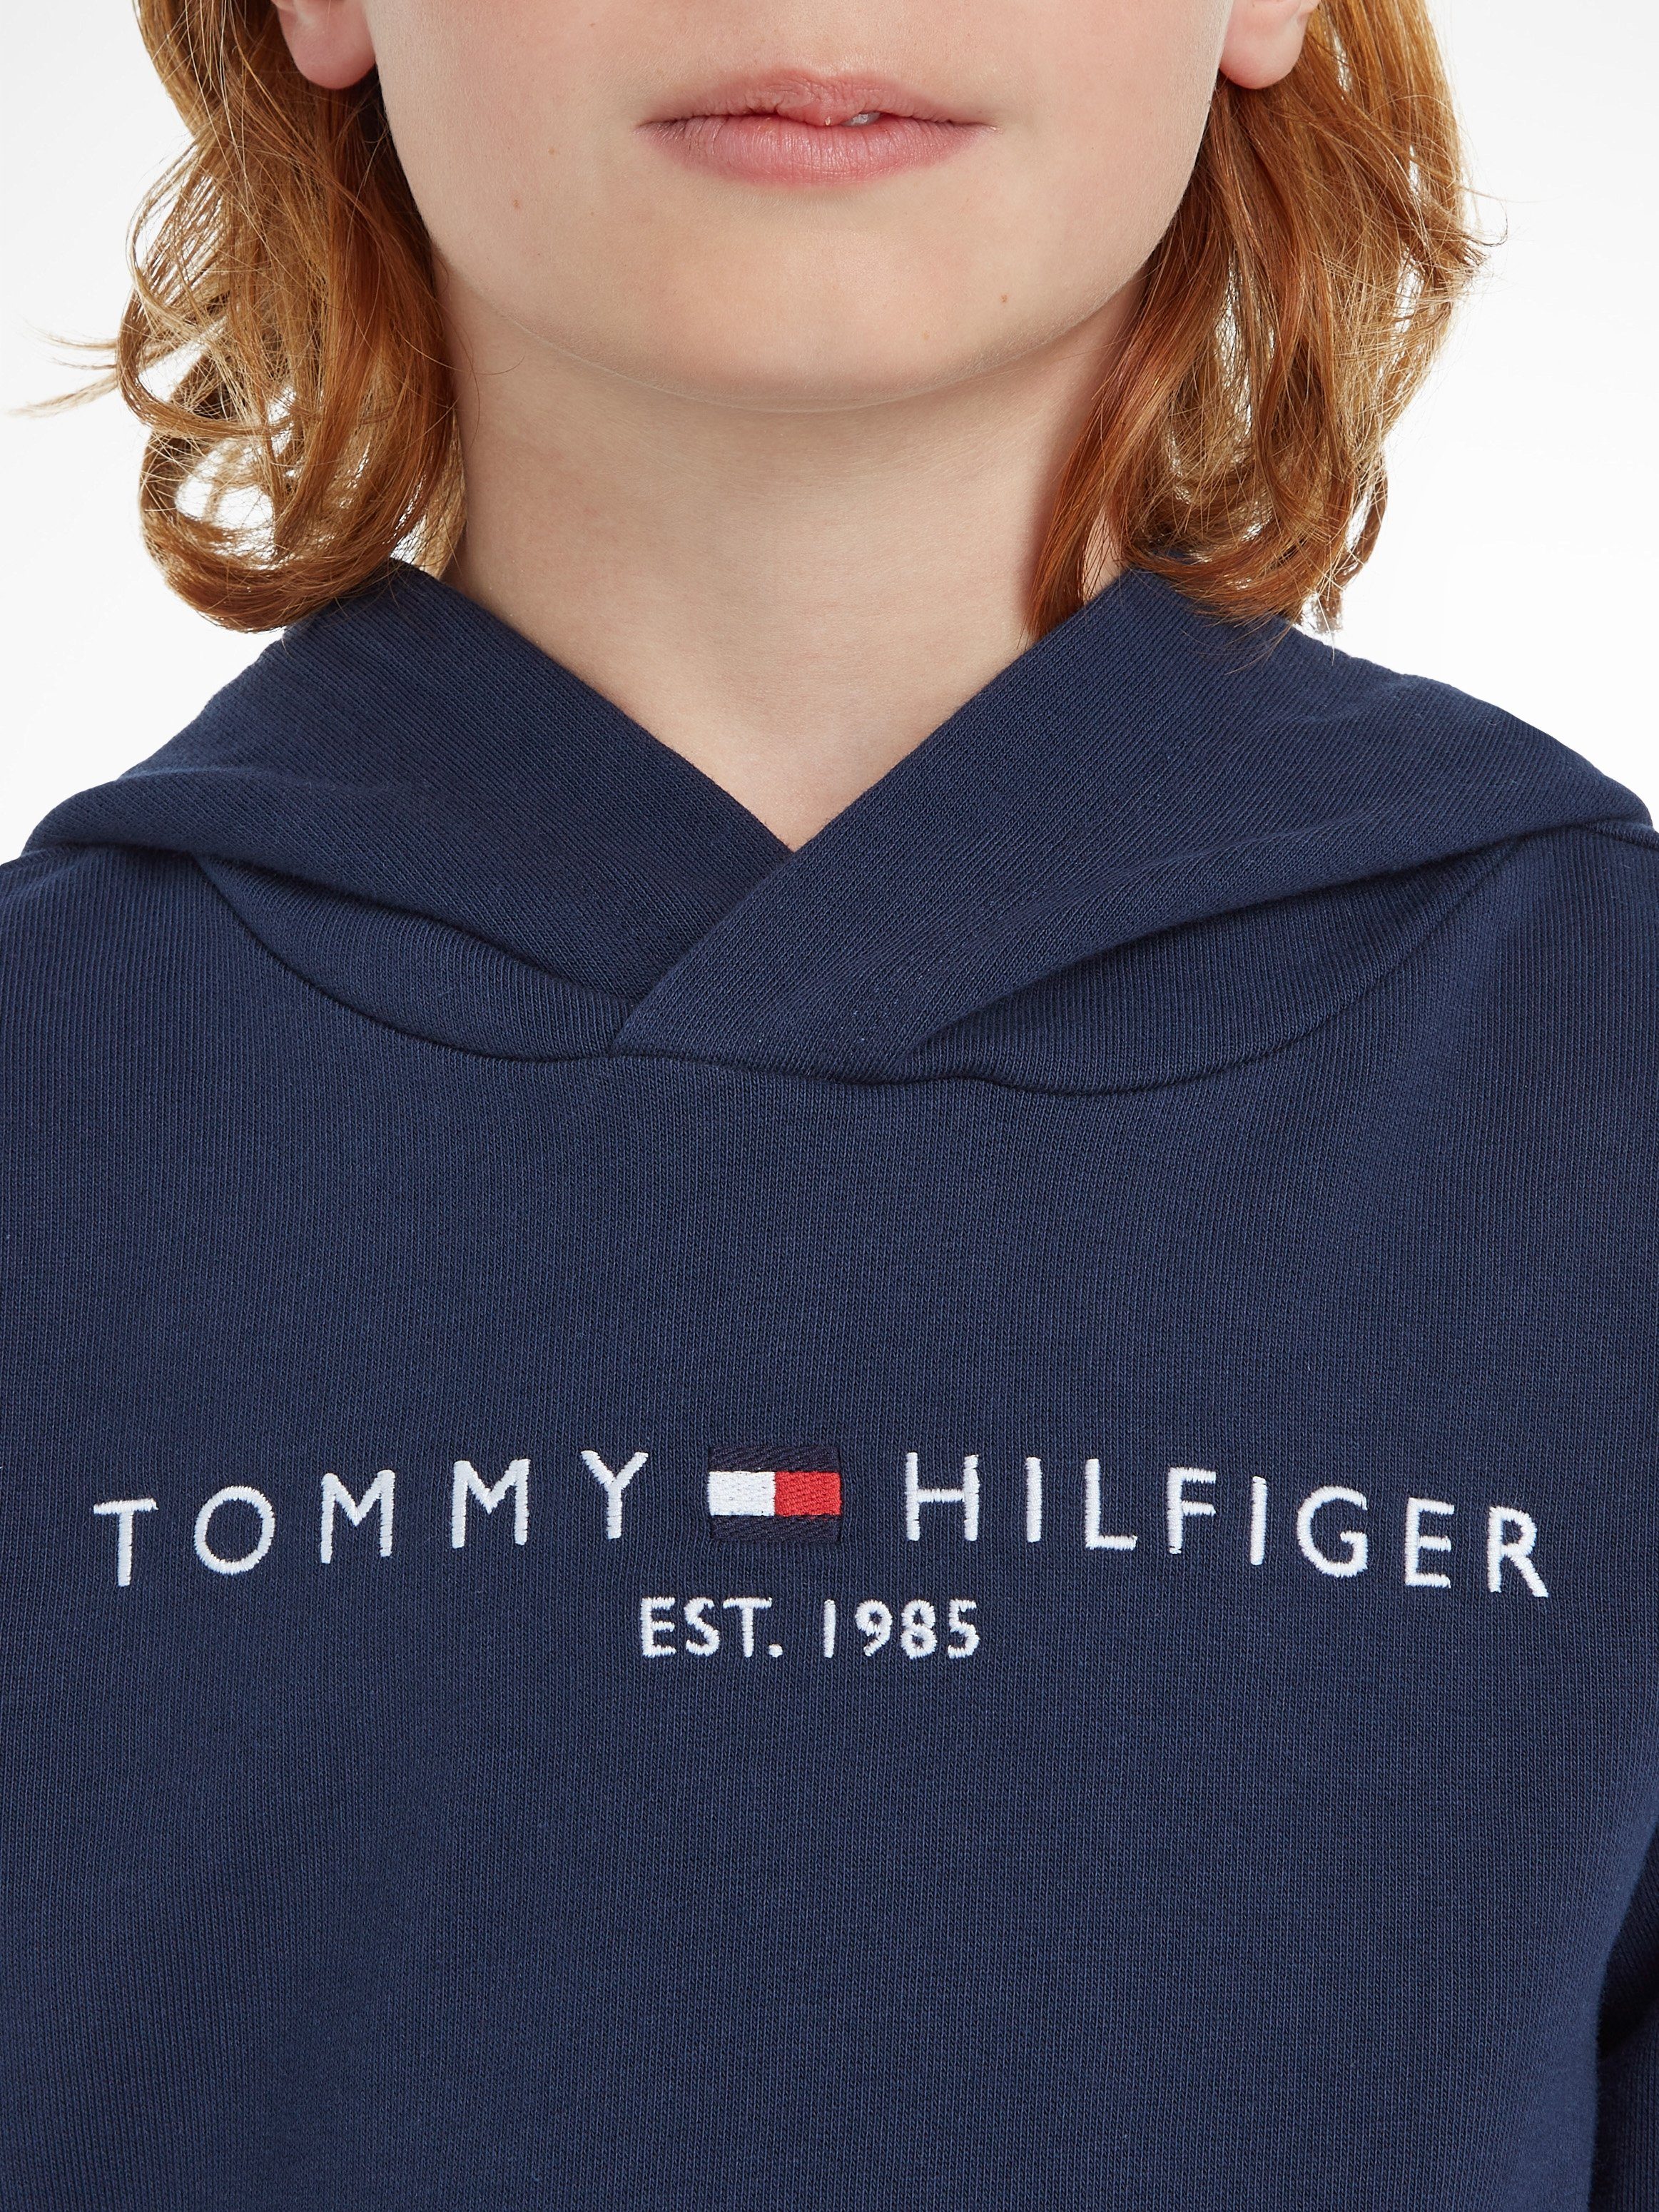 Tommy Hilfiger Kinder Junior und Kids MiniMe,für Kapuzensweatshirt ESSENTIAL HOODIE Jungen Mädchen